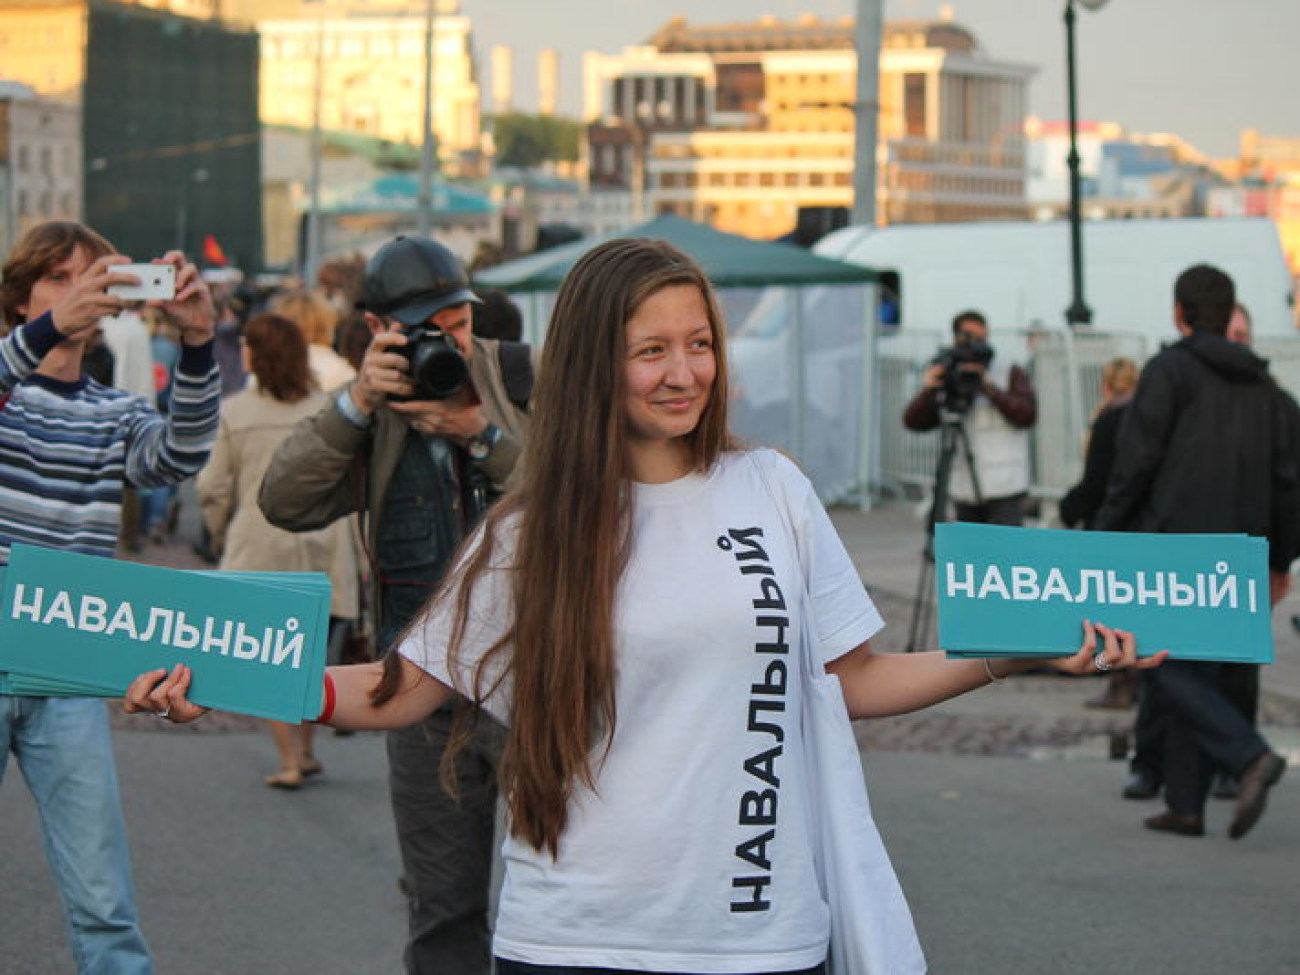 Российская оппозиция выступила против результатов выборов мэра Москвы